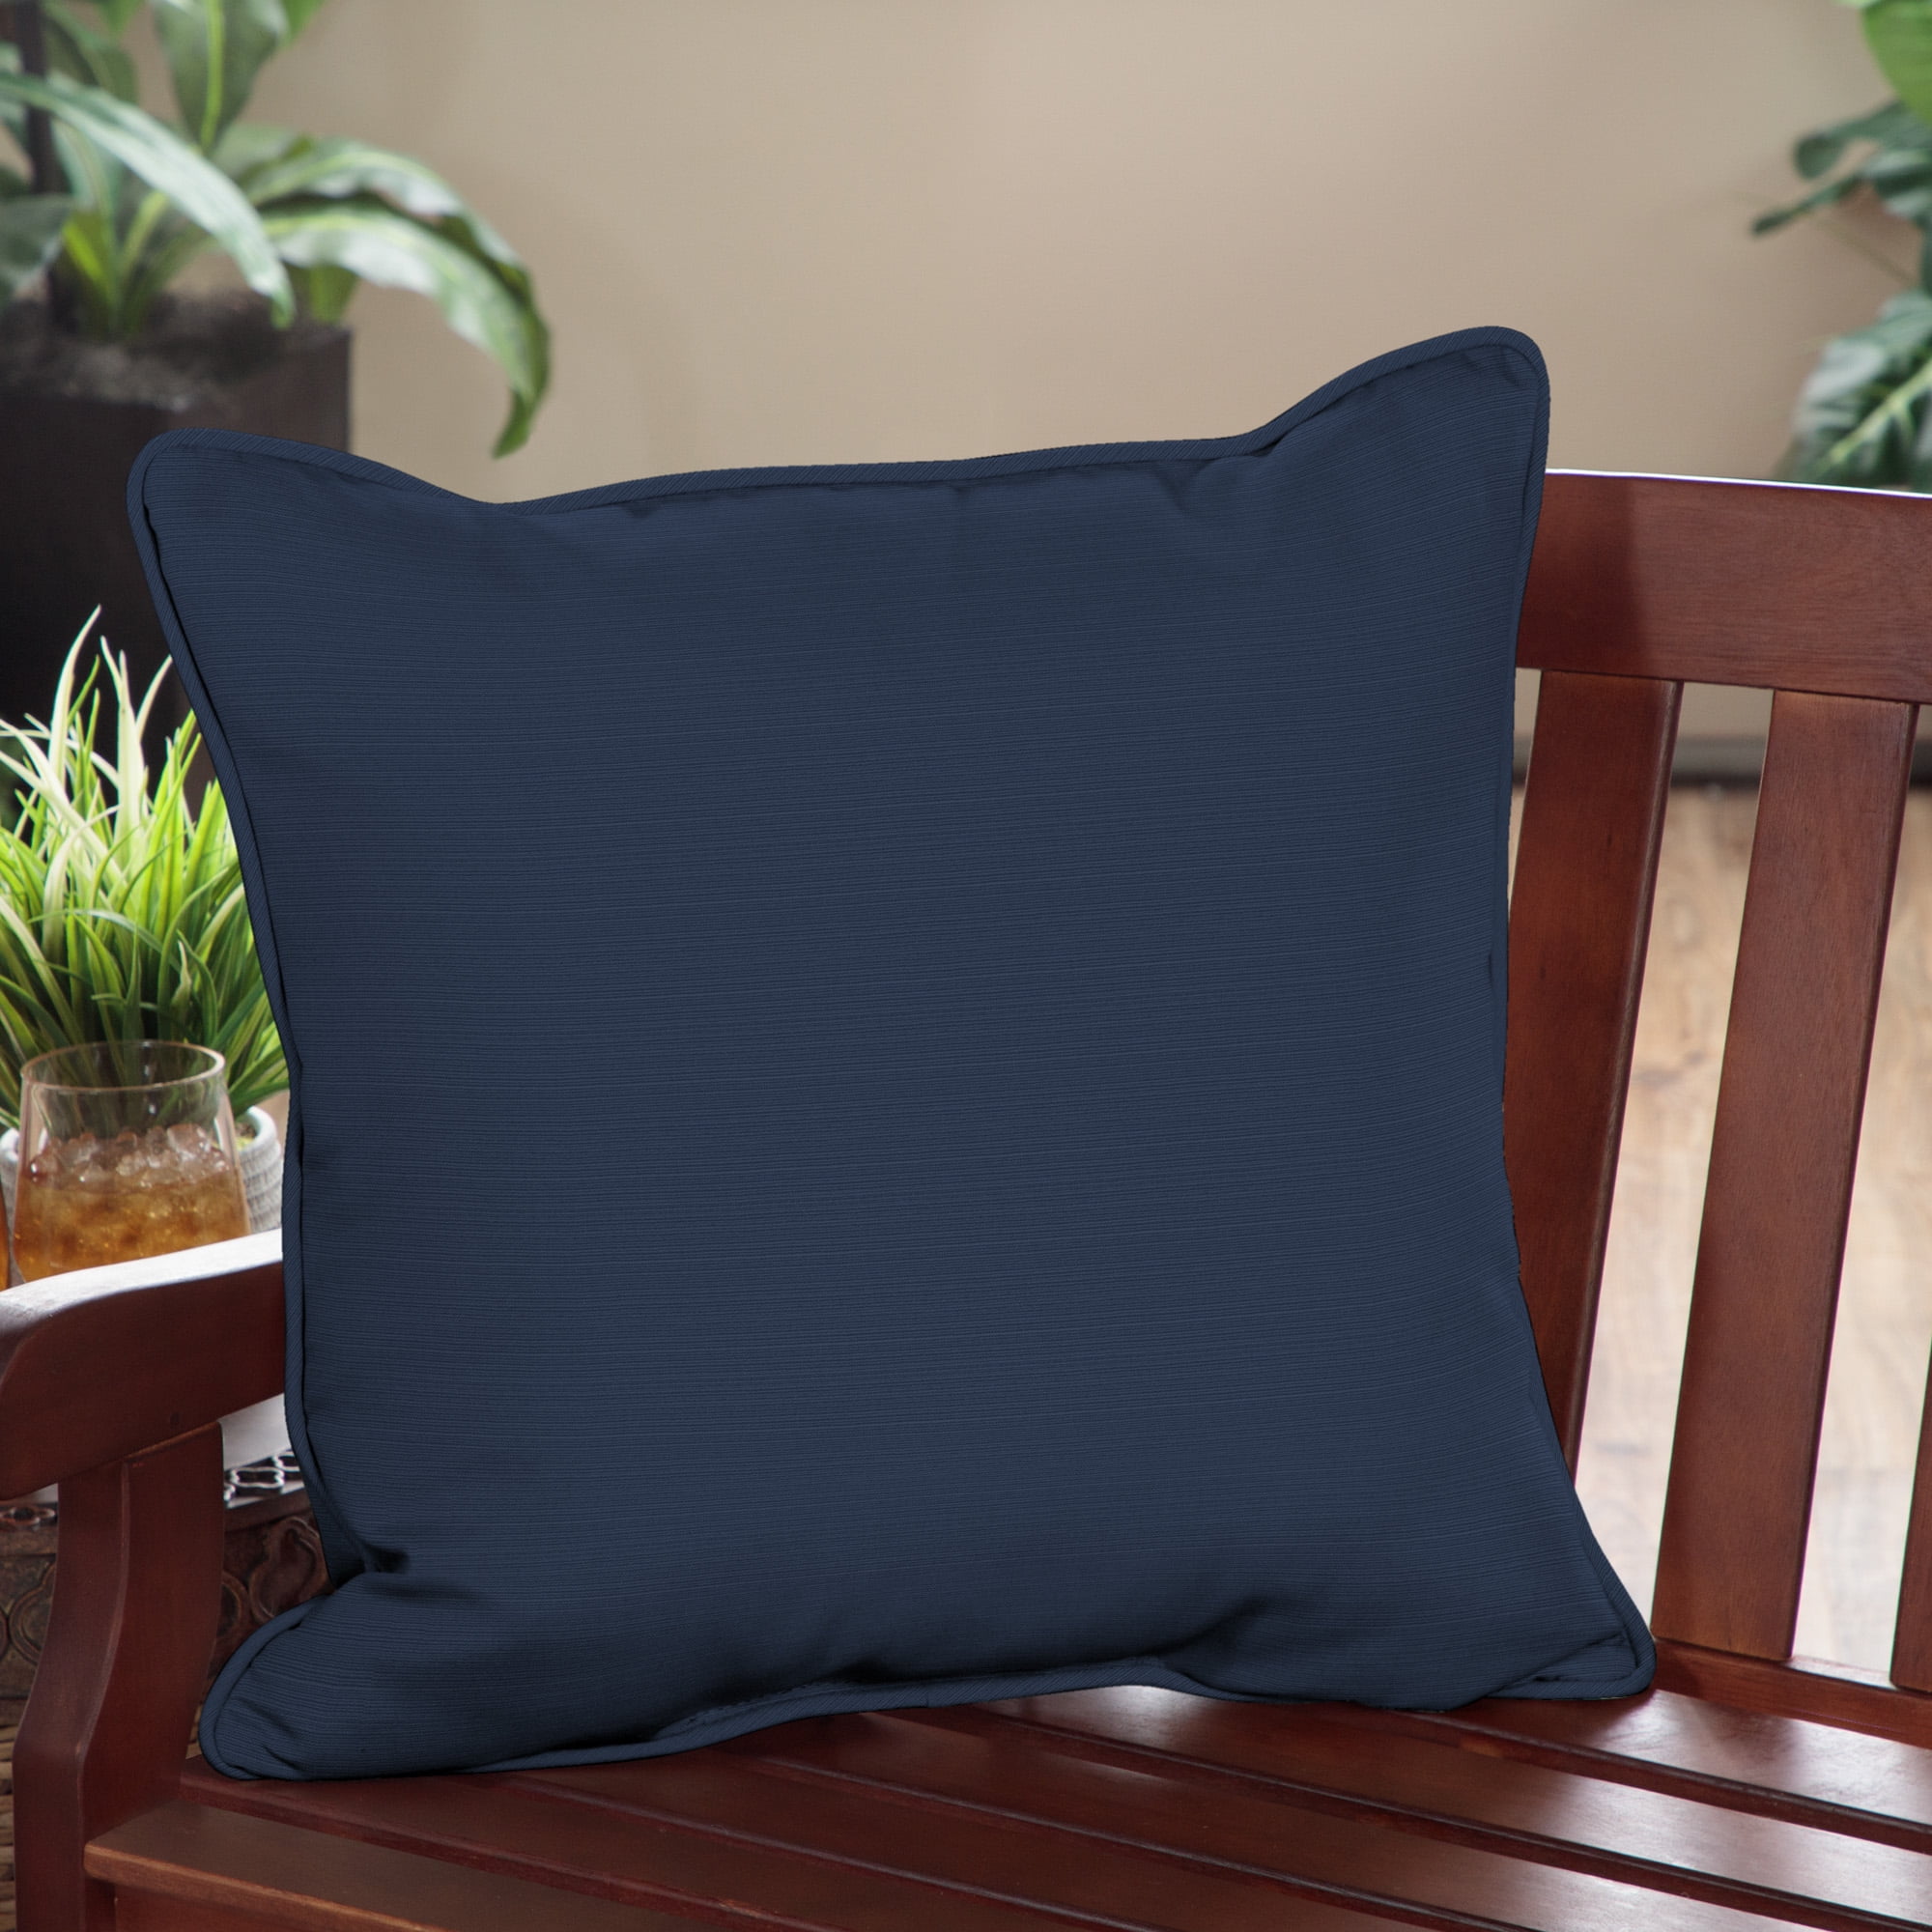 OTOSTAR Waterproof Outdoor Throw Pillow Insert 18x18 Inch Water Resist –  Metro Muscat